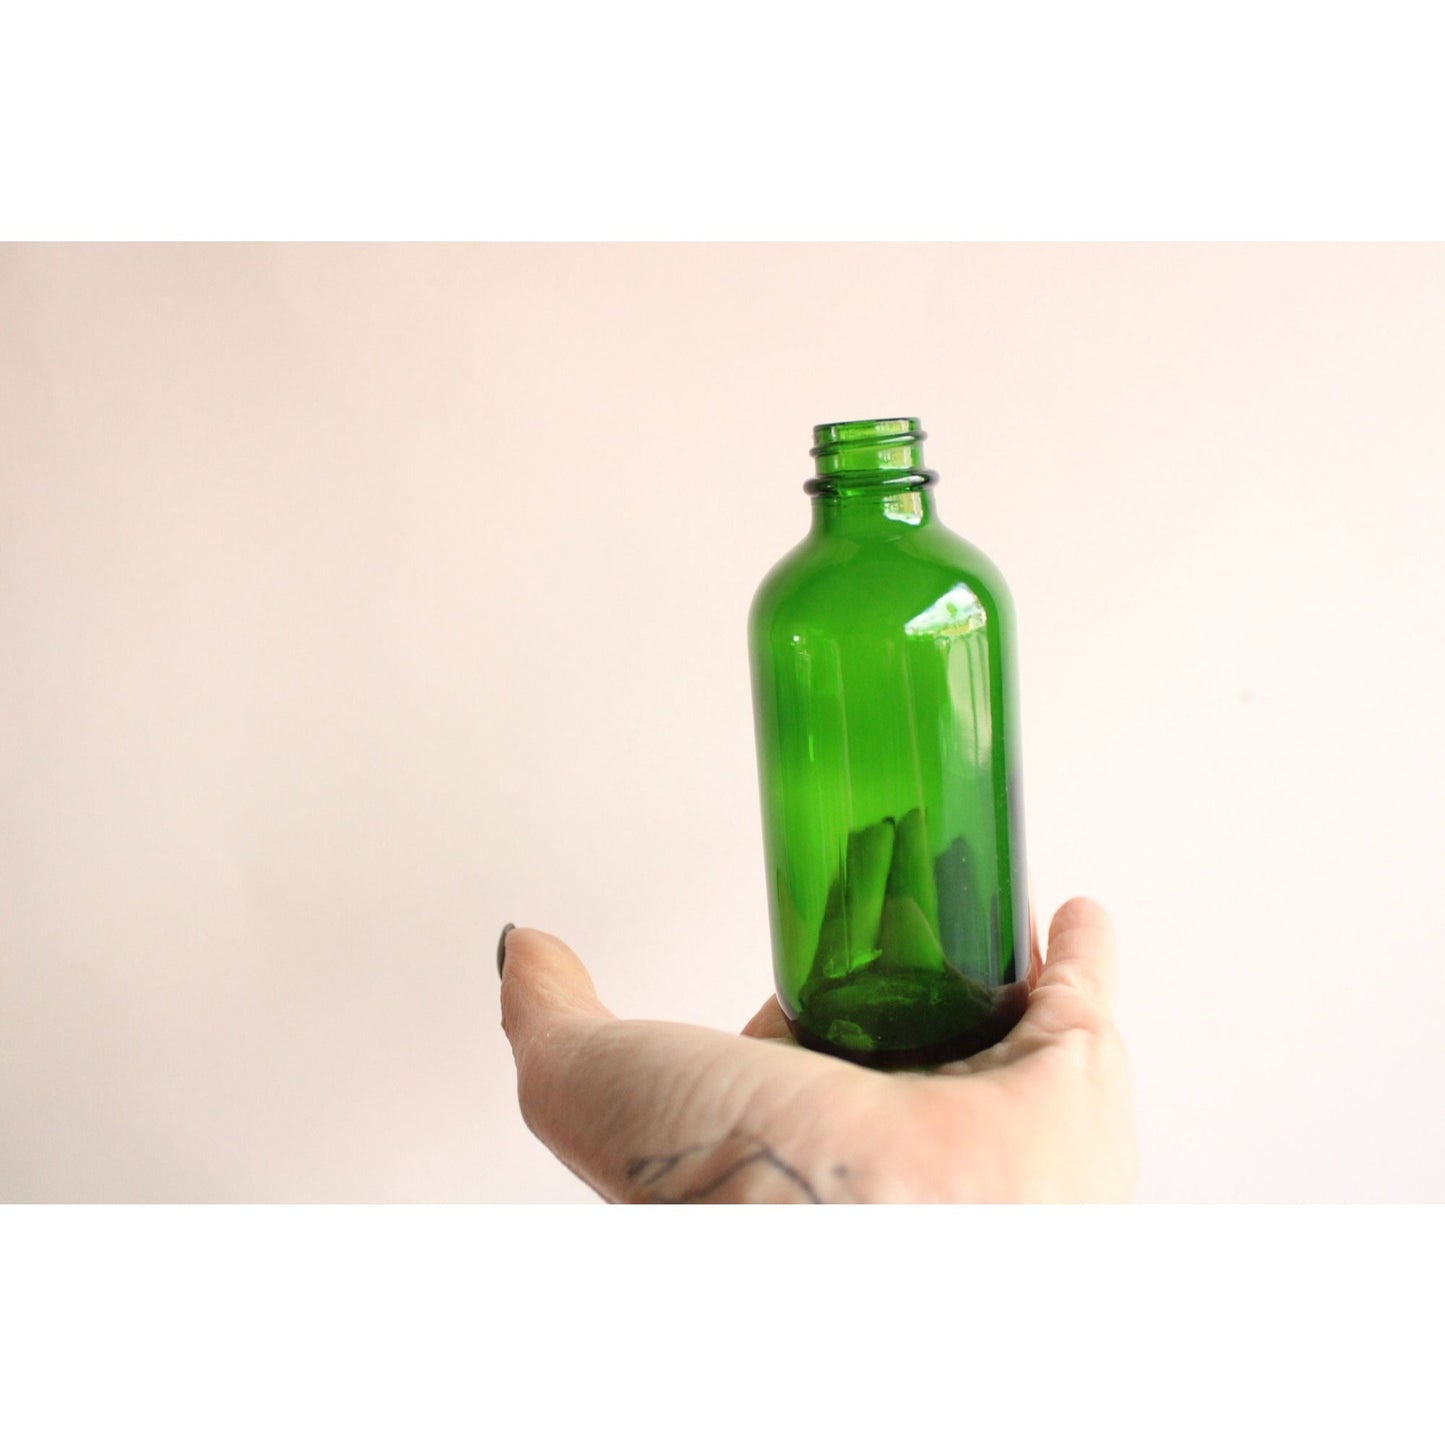 Green Glass Bottle, 4 Ounce, No Lid, One bottle